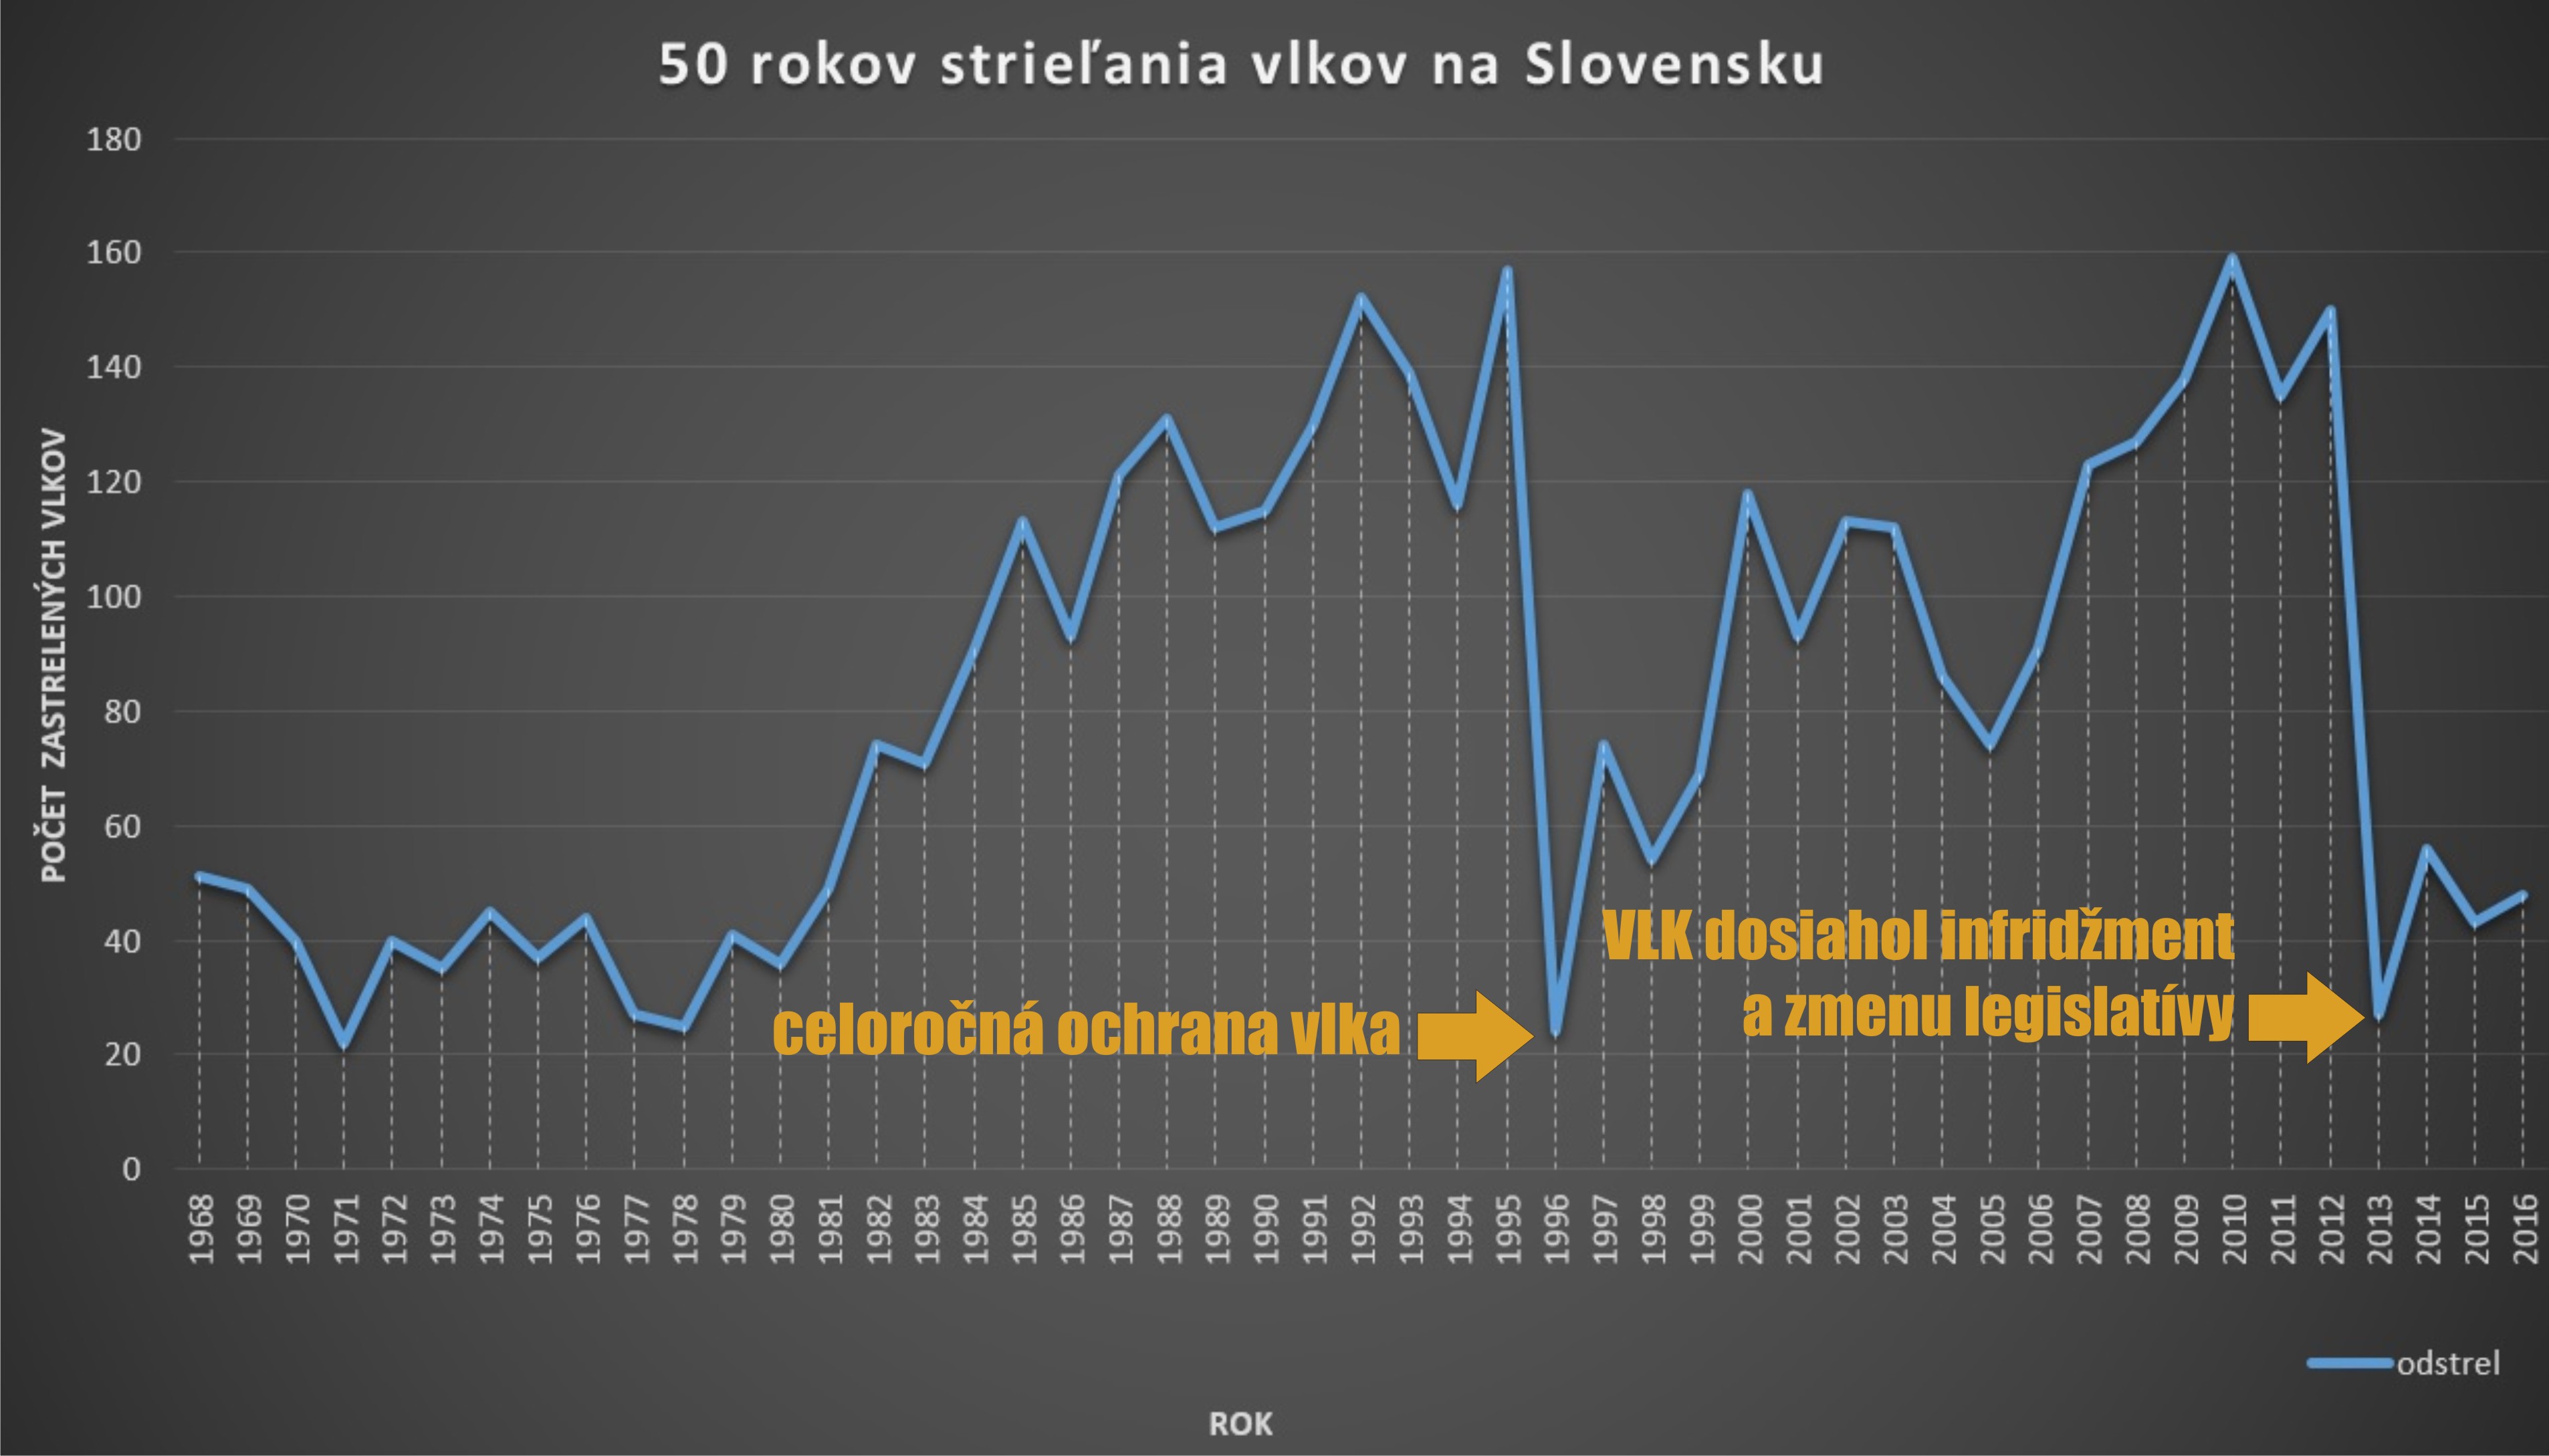 Počty zastřelených vlků na Slovensku v letech 1968 až 2016 podle mysliveckých statistik. Zdroj http://www.wolf.sk/vlky